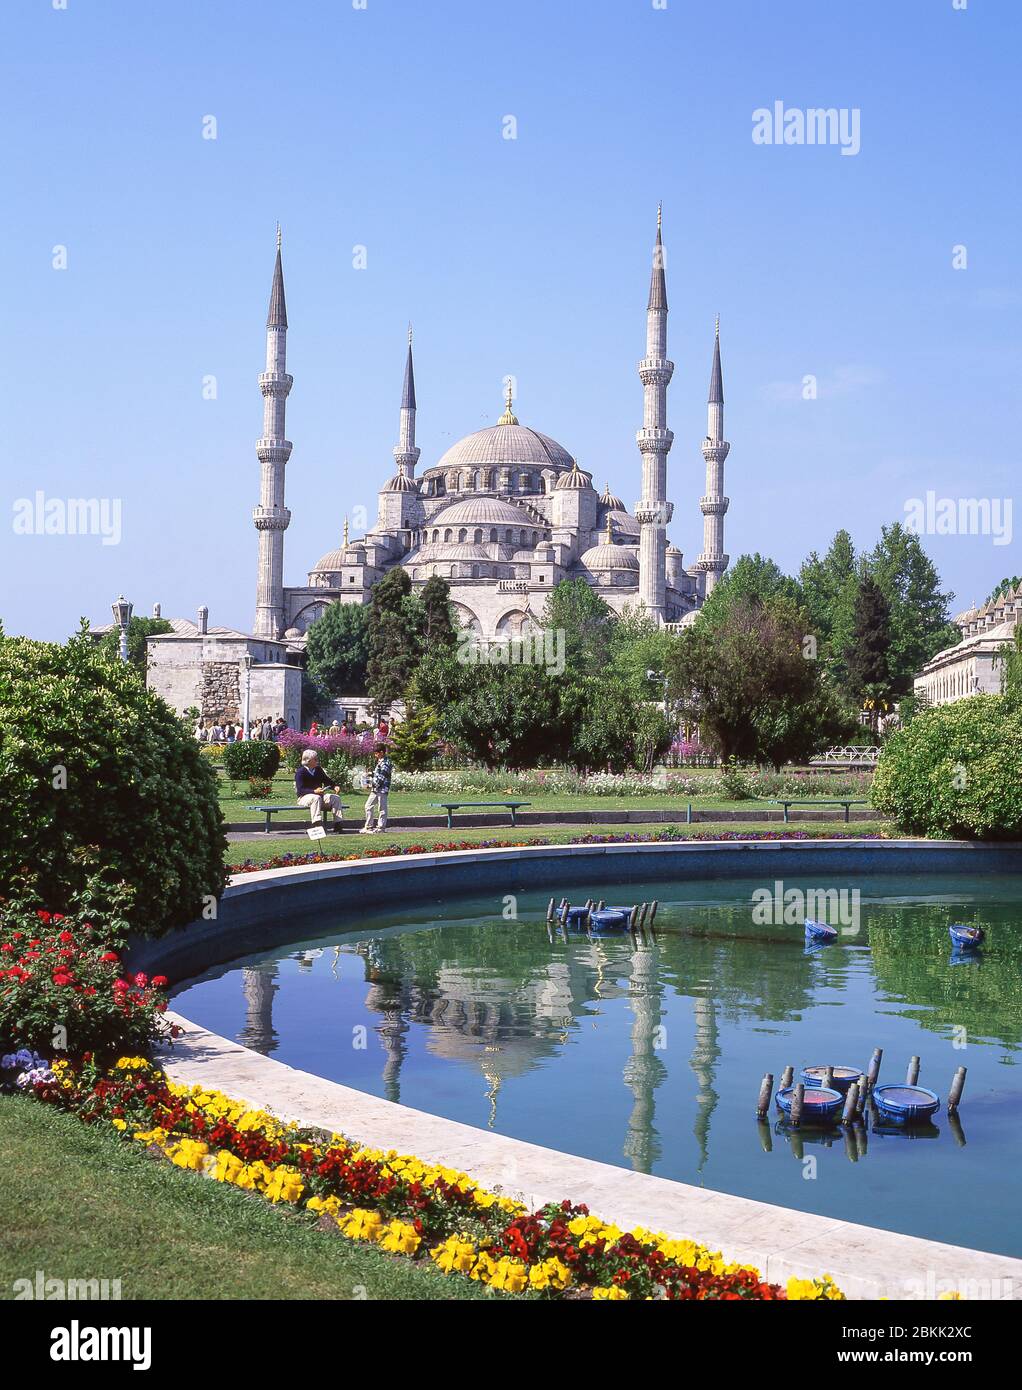 Mosquée du Sultan Ahmed (Mosquée bleue), et magasins de tapis turcs, quartier de Fatih, Istanbul, République de Turquie Banque D'Images